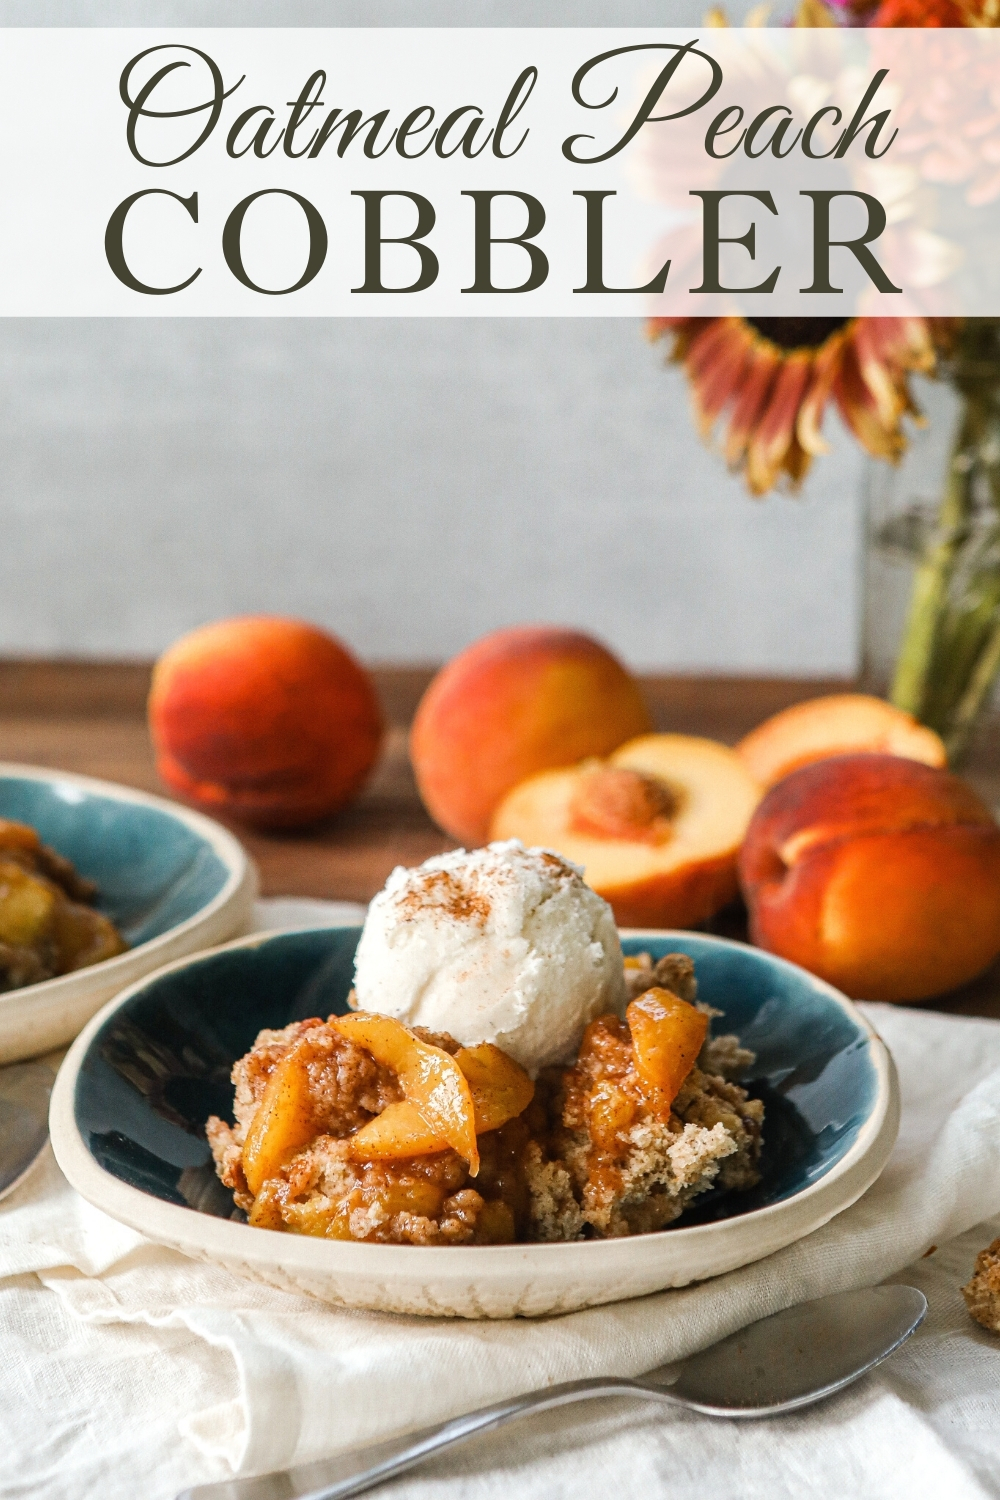 Oatmeal Peach Cobbler with fresh peaches